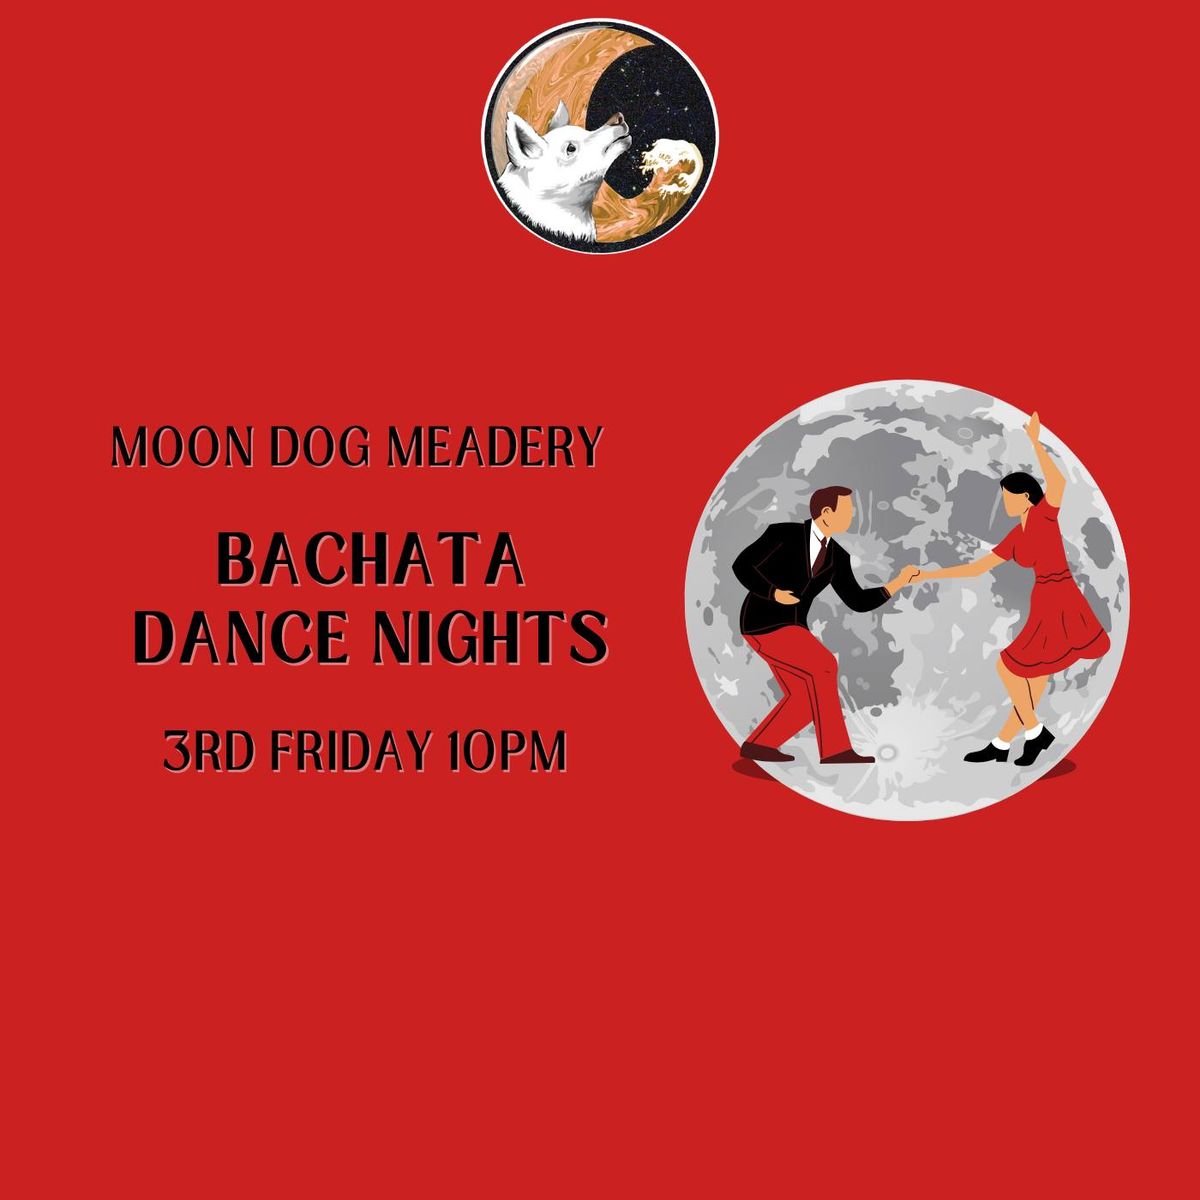 Third Friday Bachata Dance Night